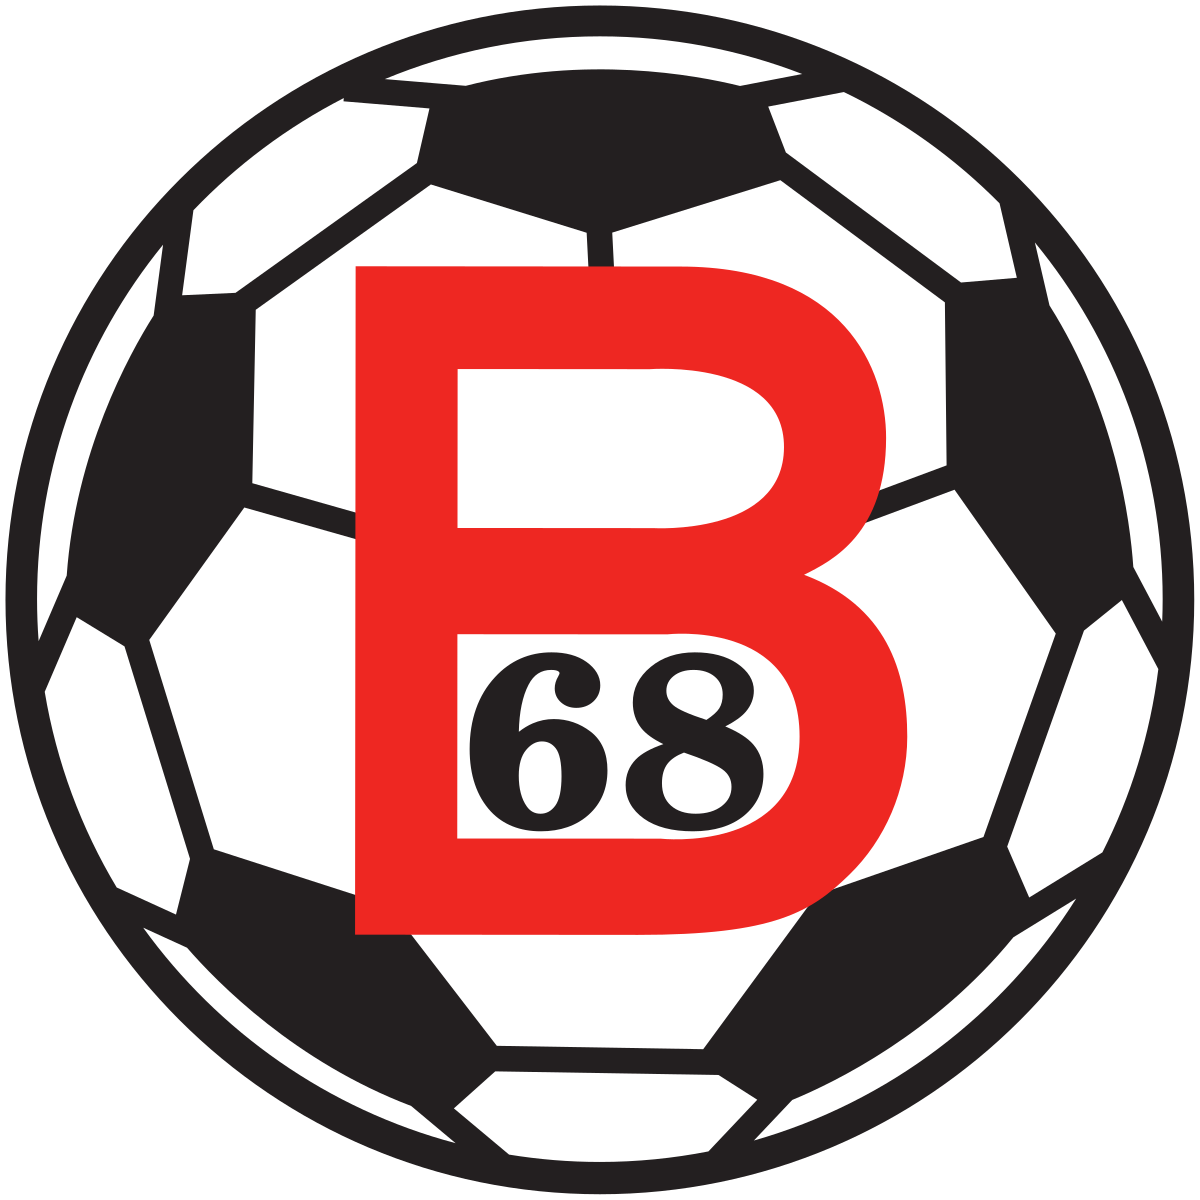 B68 vann móti AB í gjárkvøldið